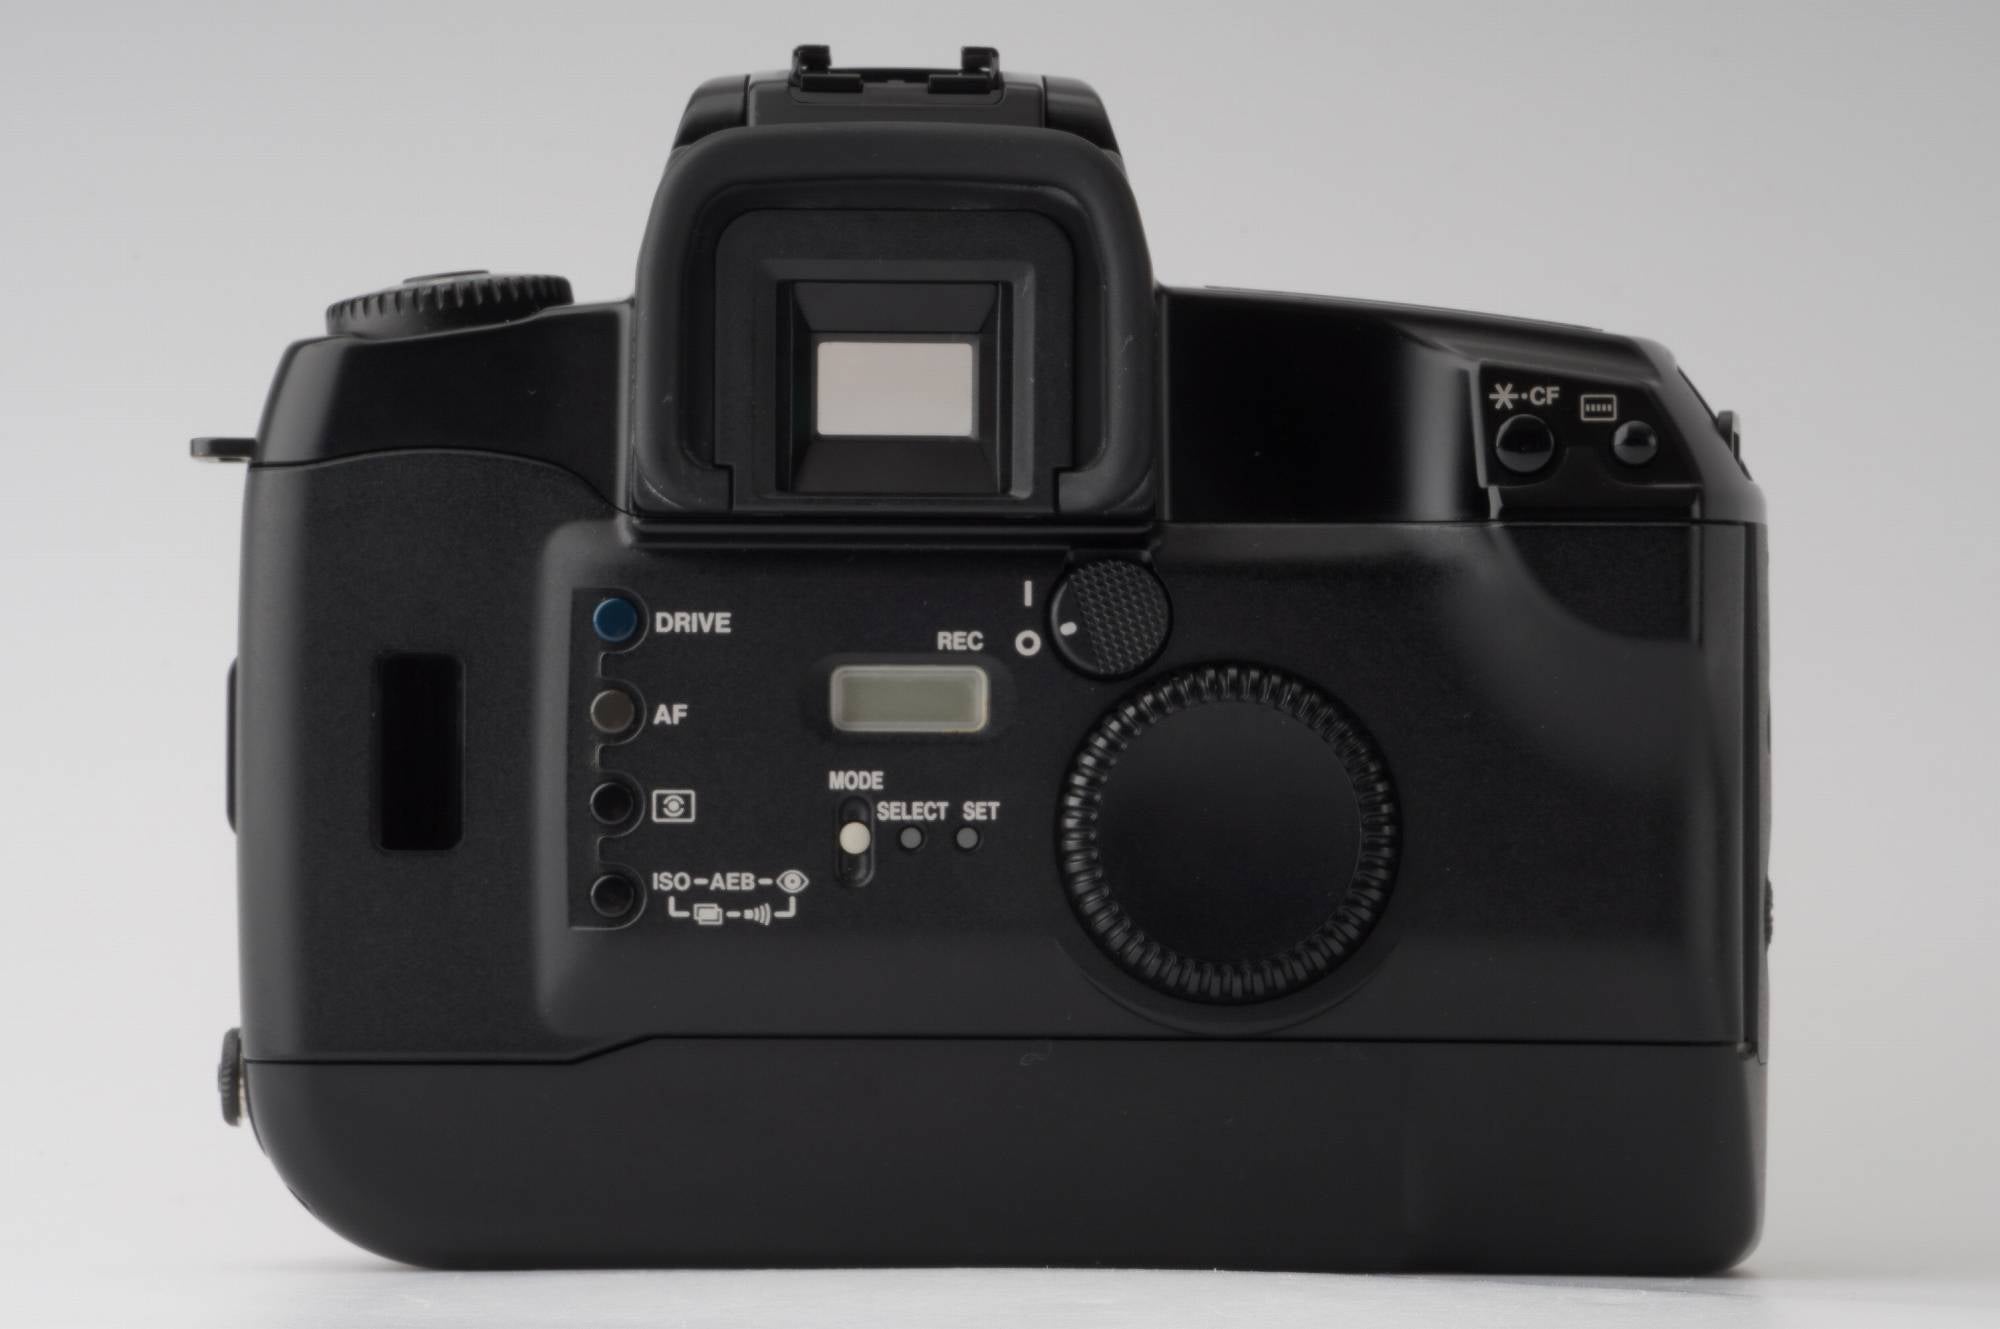 キヤノン Canon EOS 5 一眼レフフィルムカメラ – Natural Camera